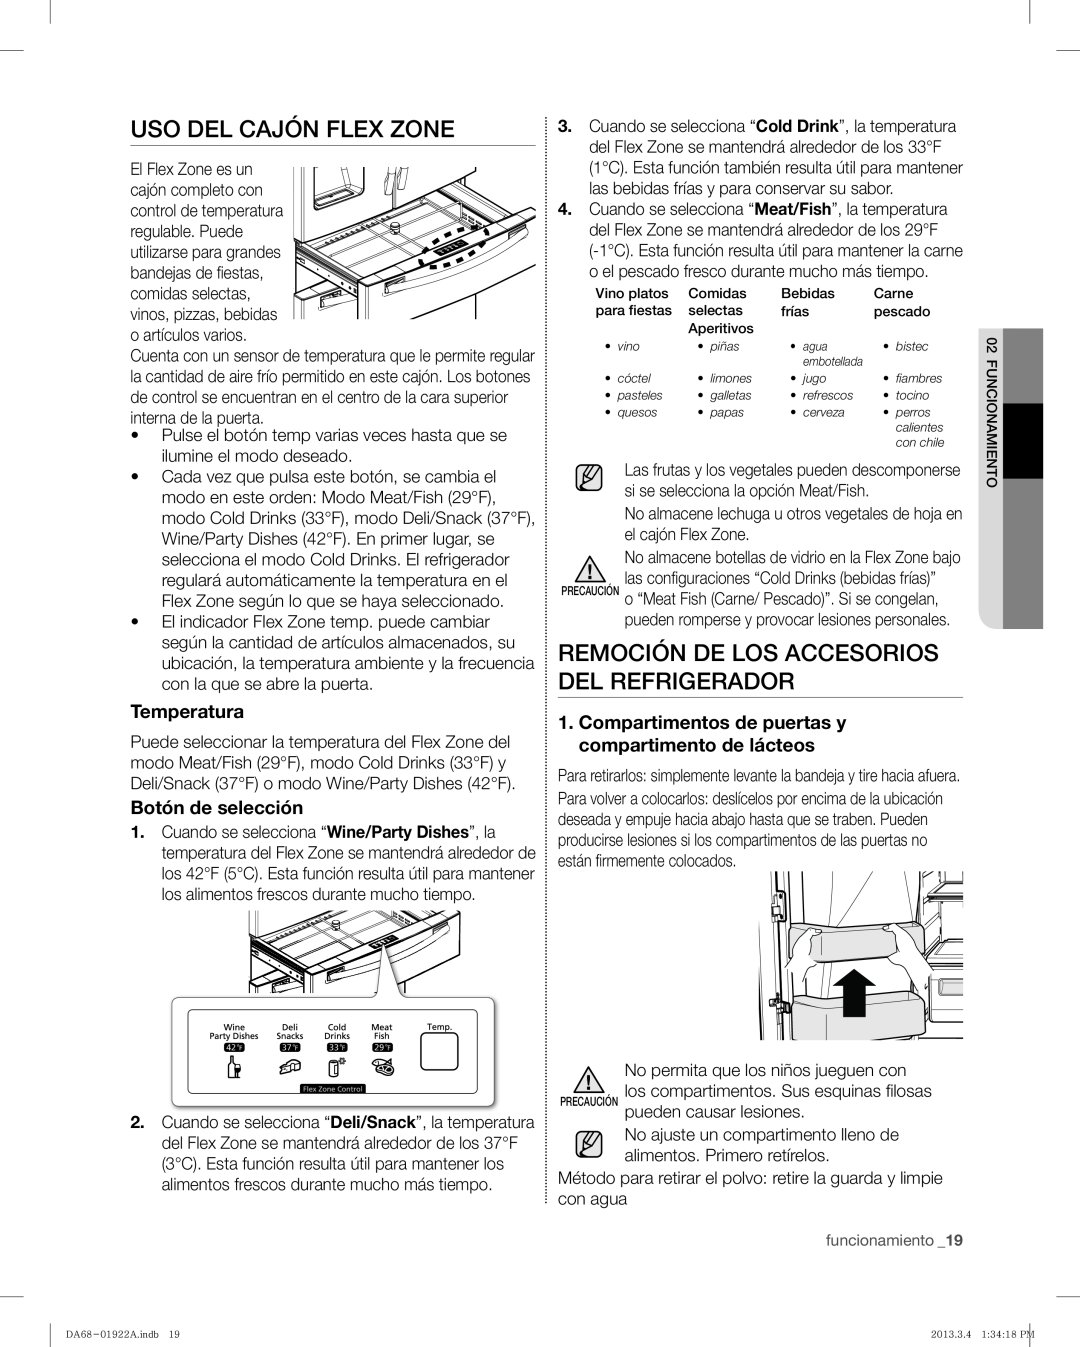 Samsung RF4287HABP Uso Del Cajón Flex Zone, Remoción De Los Accesorios Del Refrigerador, Temperatura, Botón de selección 